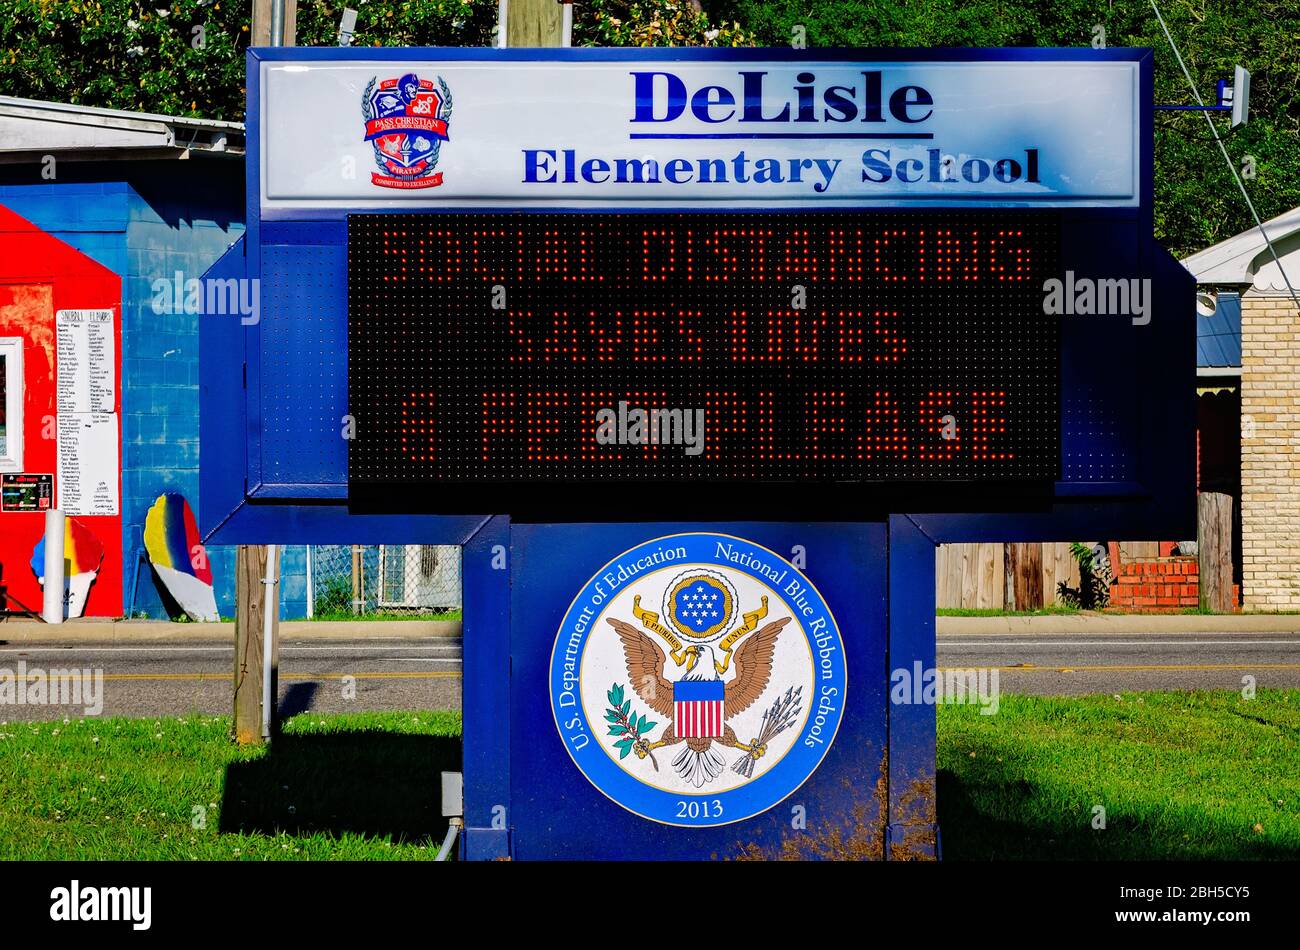 Un panneau électronique encourage la distanciation sociale — à moins de six pieds — à l'école élémentaire Delisle au Mississippi pendant la pandémie de COVID-19. Banque D'Images